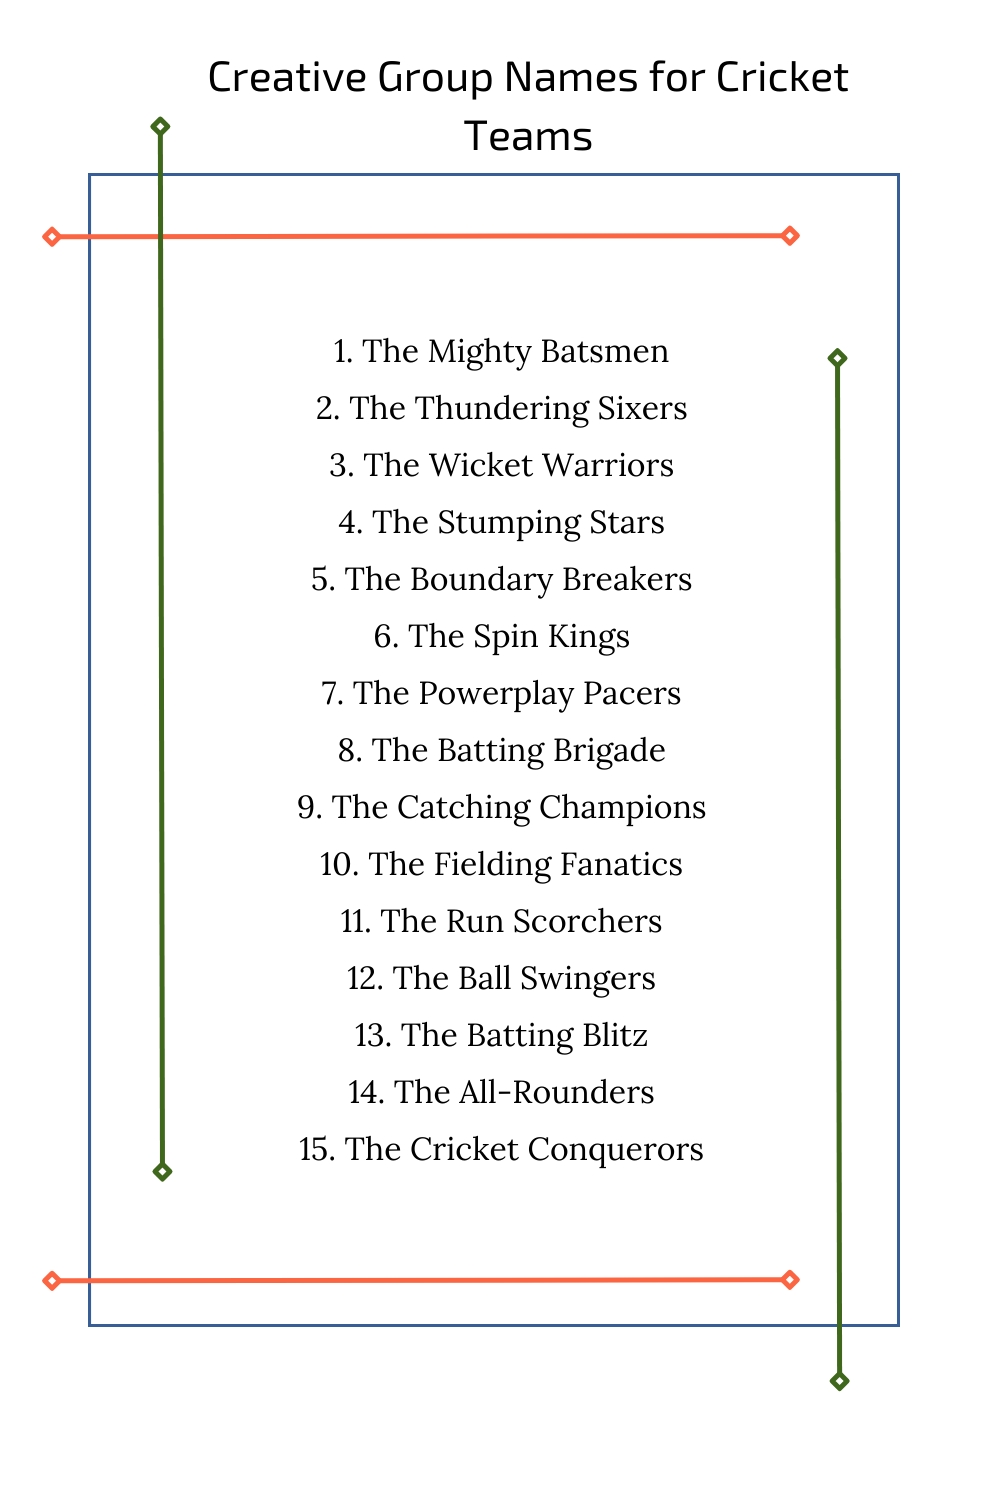 Creative Group Names for Cricket Teams